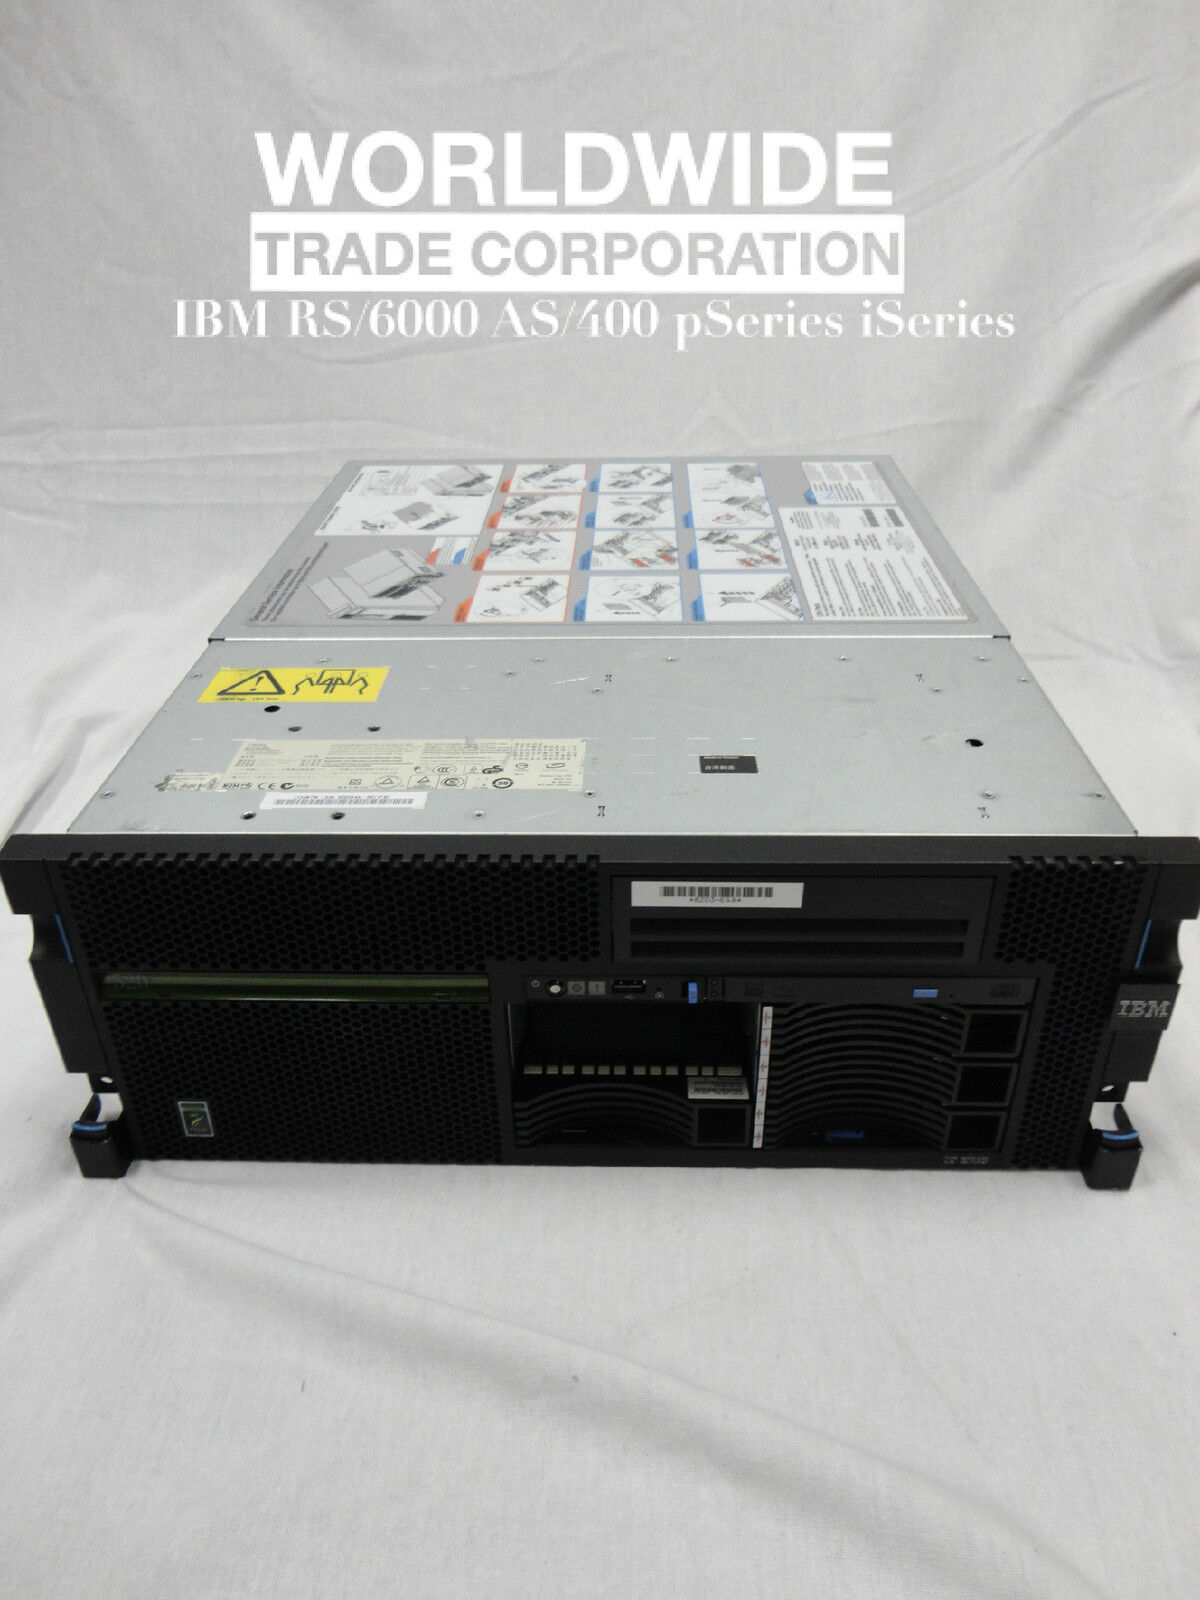 IBM 8203 E4A p520 Server 4.7GHz 4-Core POWER6,8GB x 146GB HD, PowerVM Enterprise